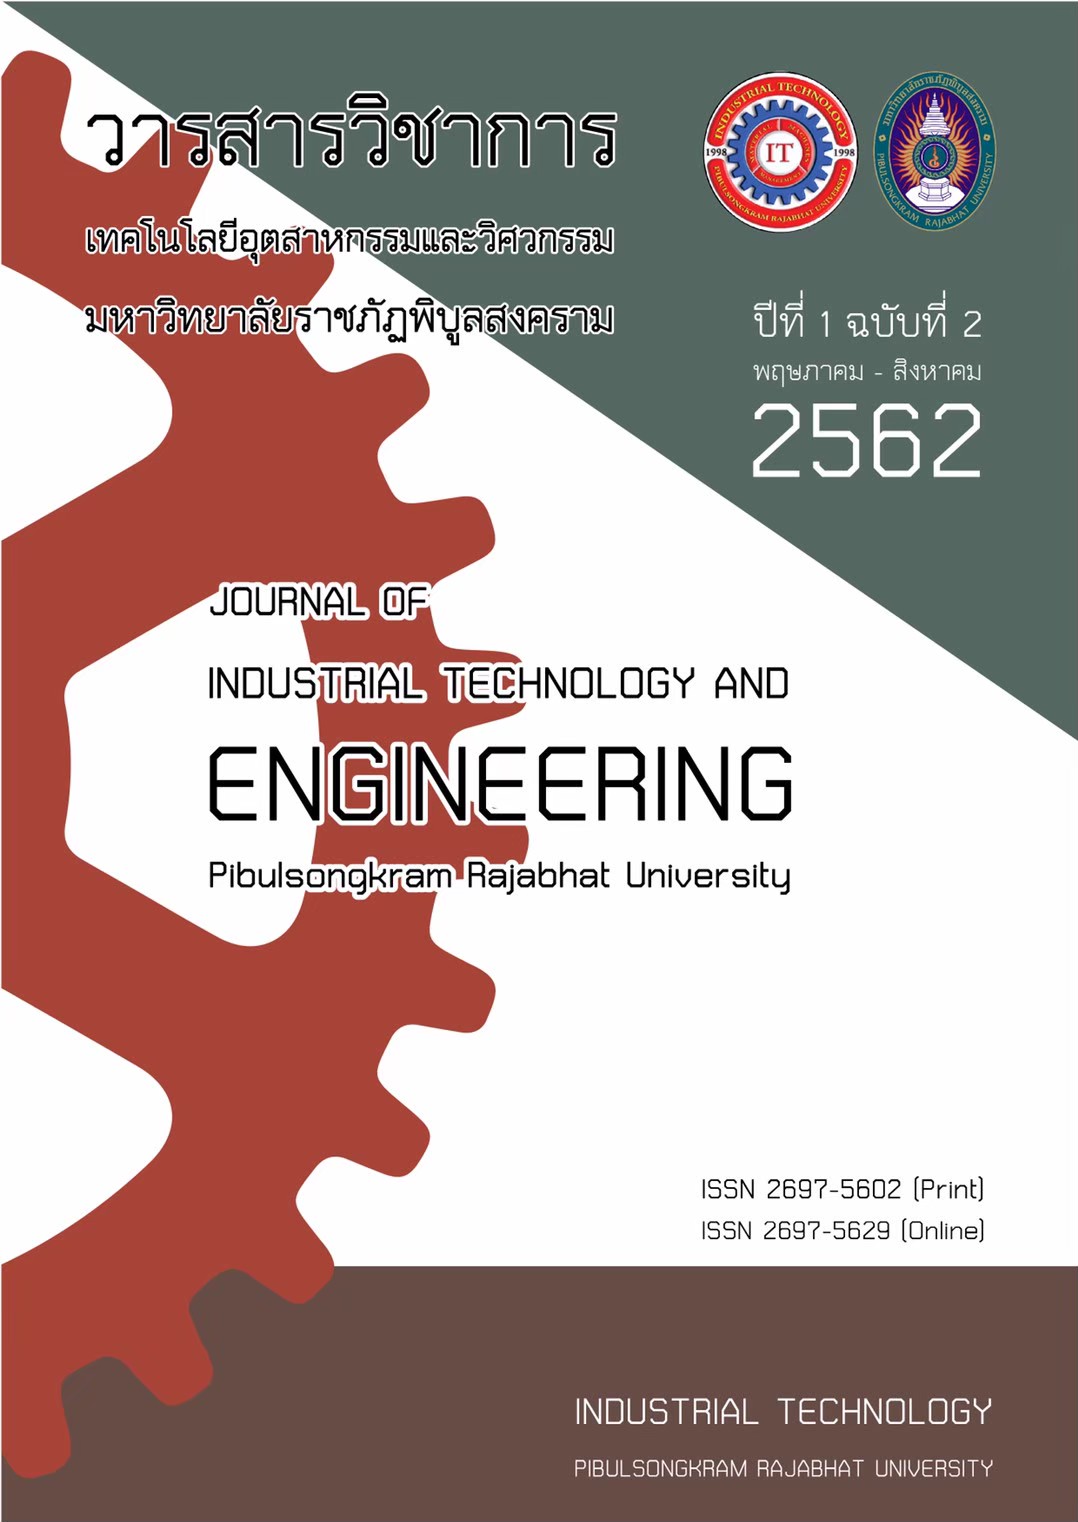 					ดู ปีที่ 1 ฉบับที่ 2 (2019): May 2019 - August 2019 (PSRU Journal of Industrial Technology and Engineering)
				